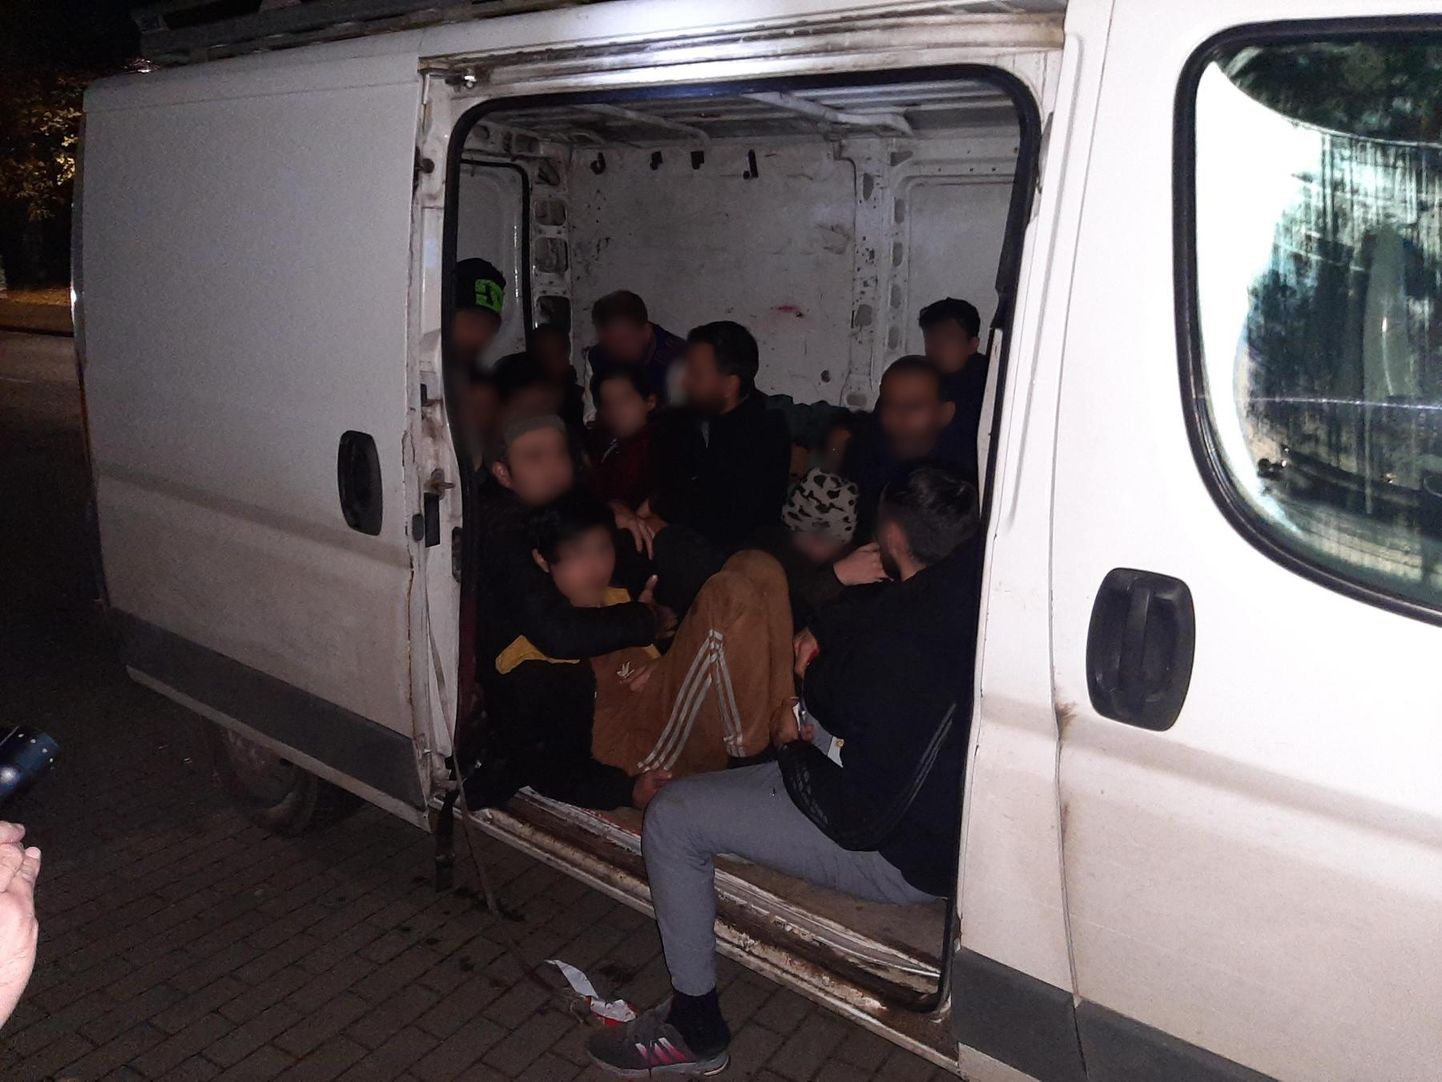 Немецкие полицейские недалеко от польской границы обнаружили 24 нелегалов из Ирана и Ирака в фургоне жителя Эстонии.